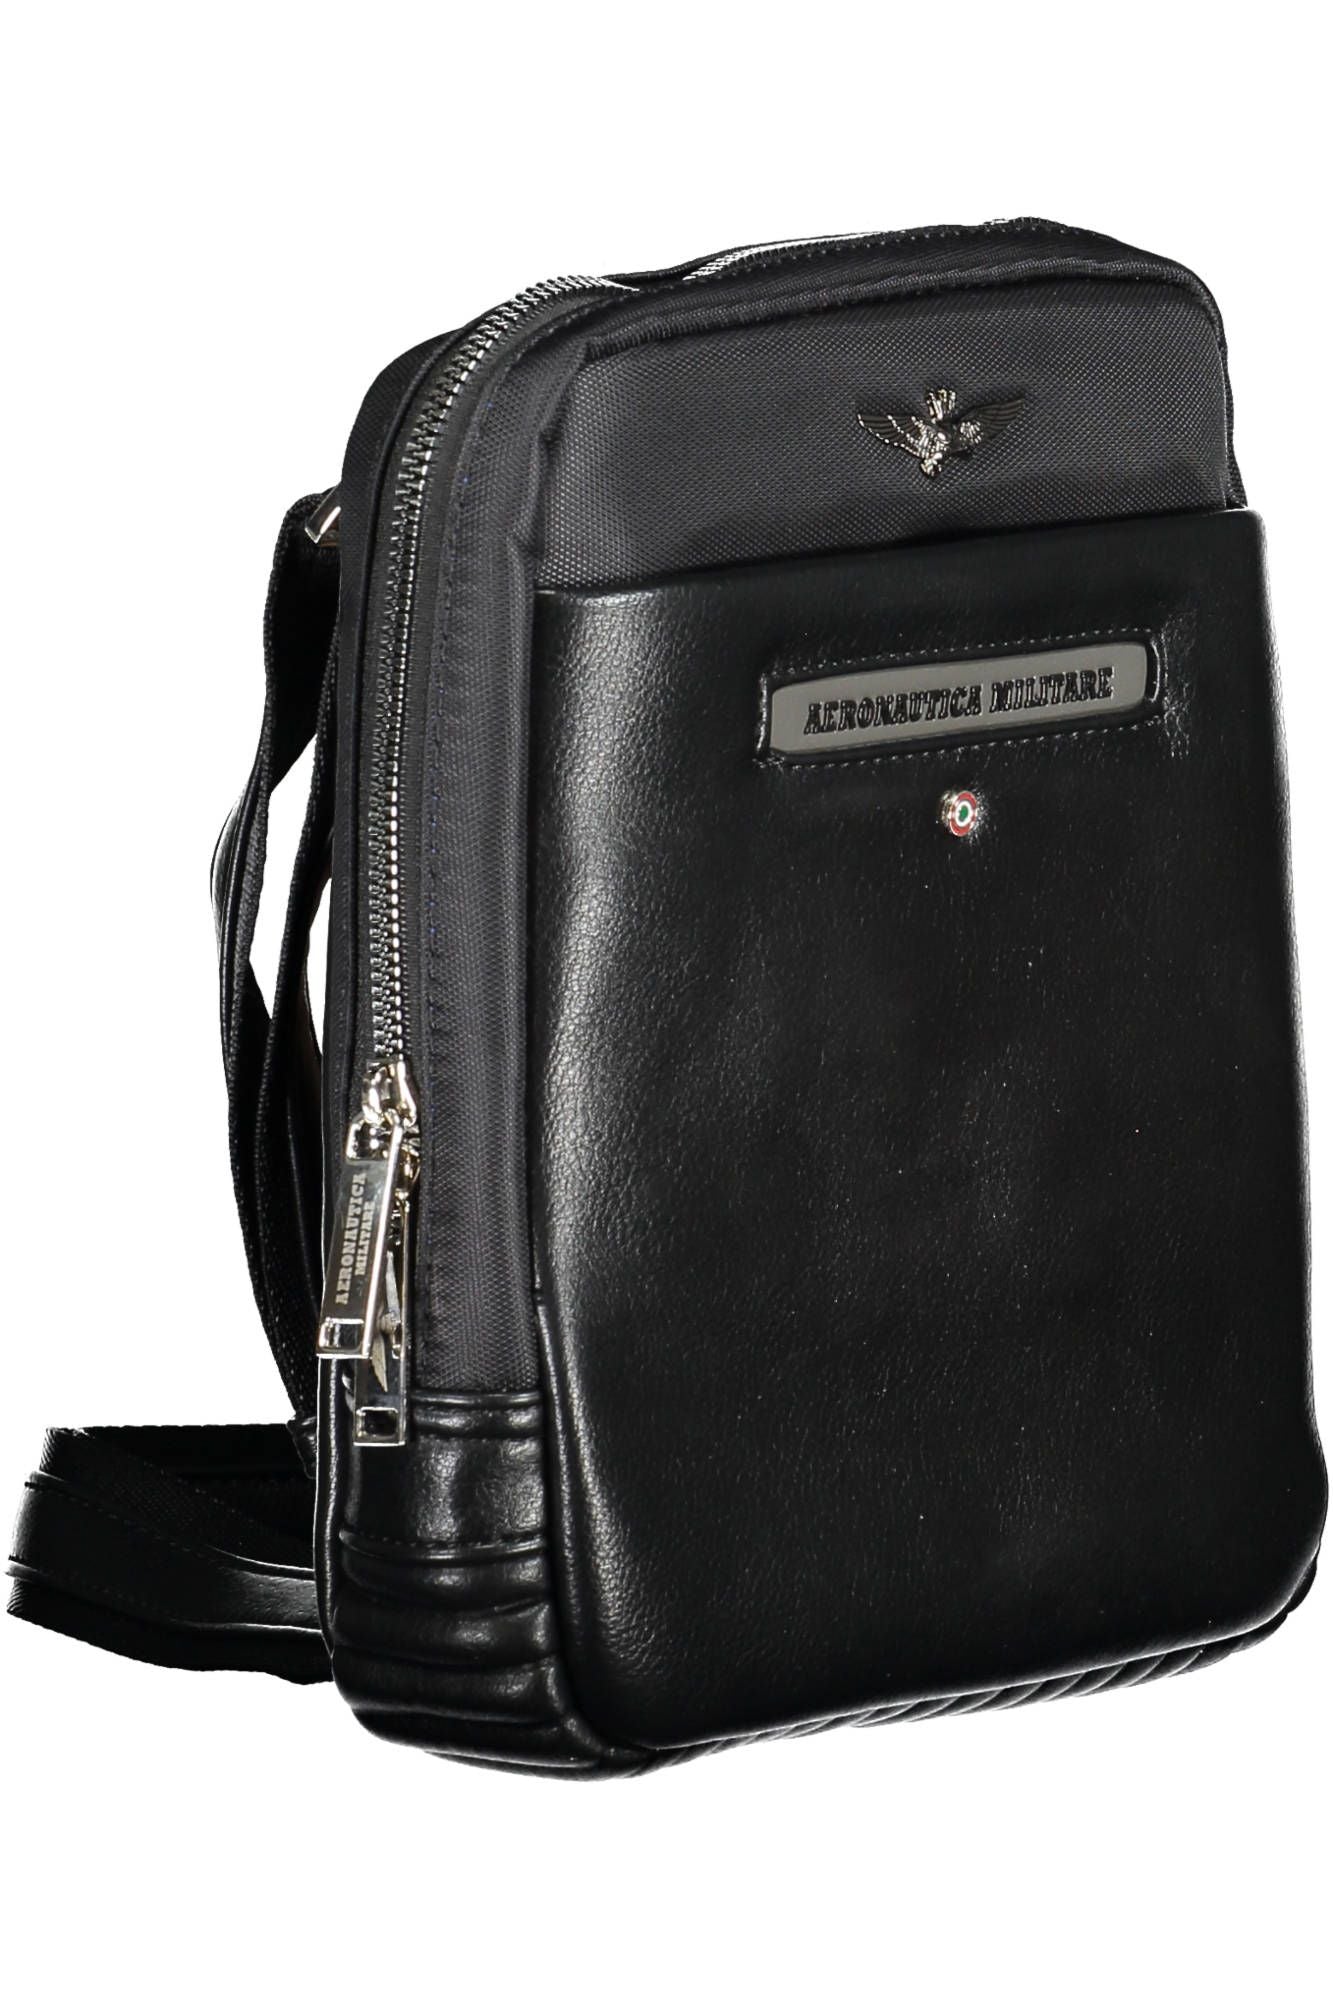 Durable Black Shoulder Bag with Ample Storage